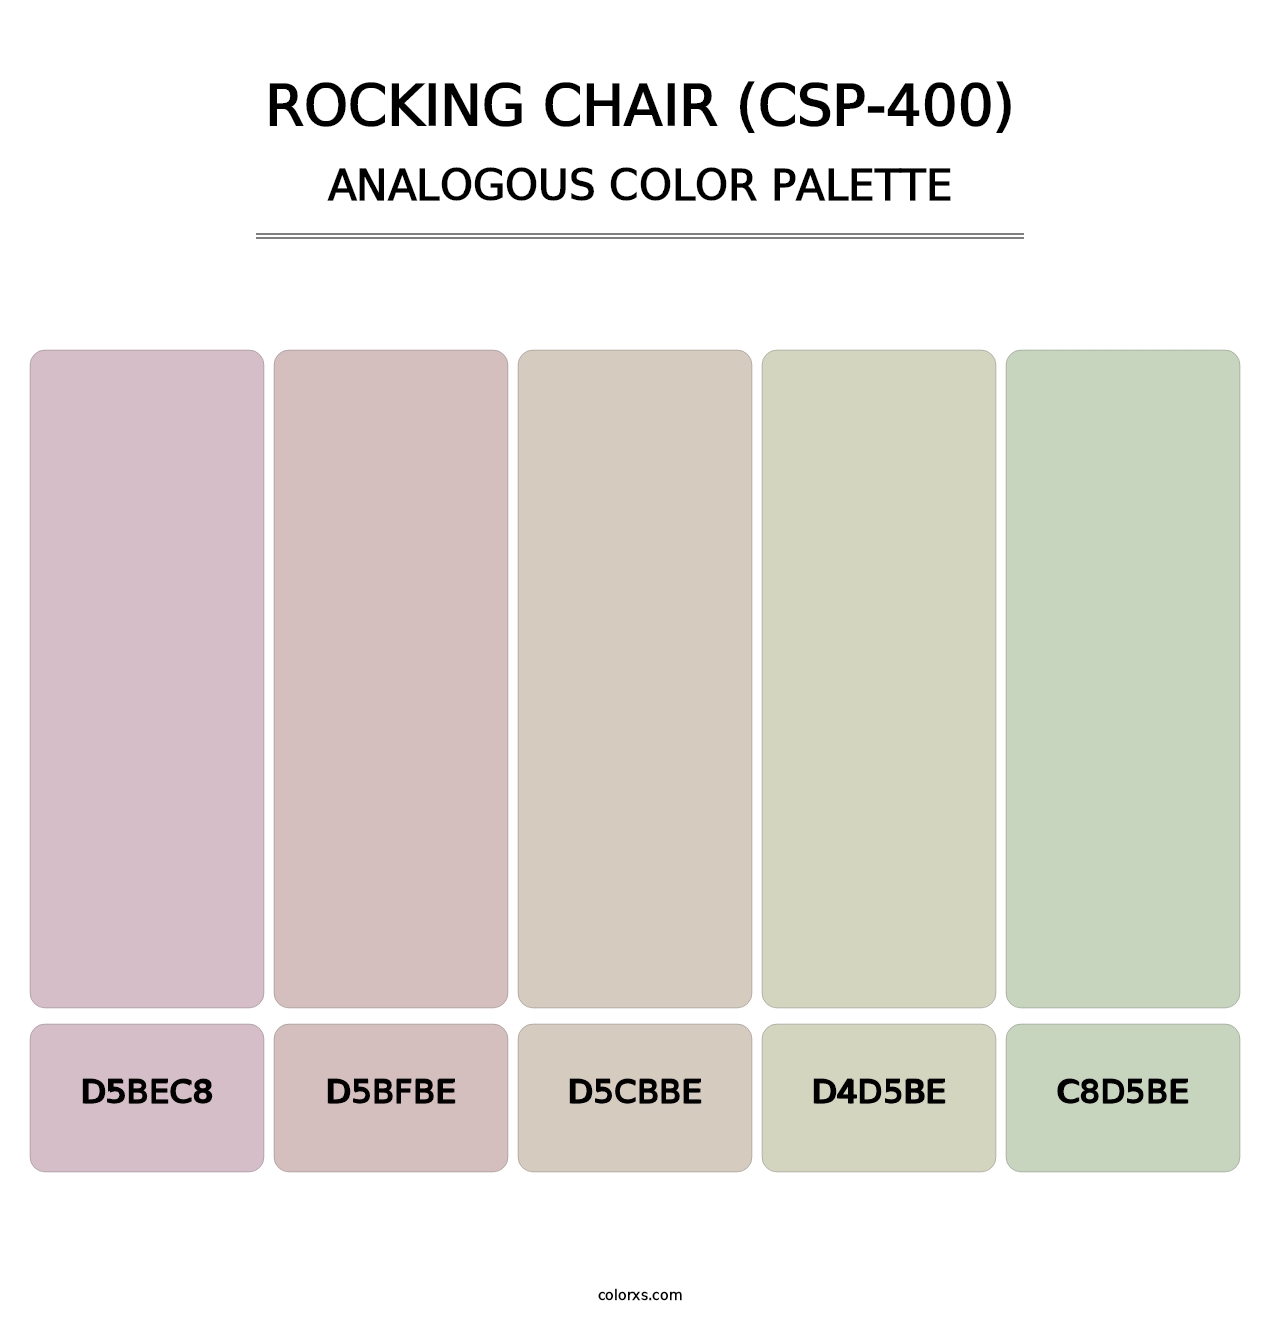 Rocking Chair (CSP-400) - Analogous Color Palette